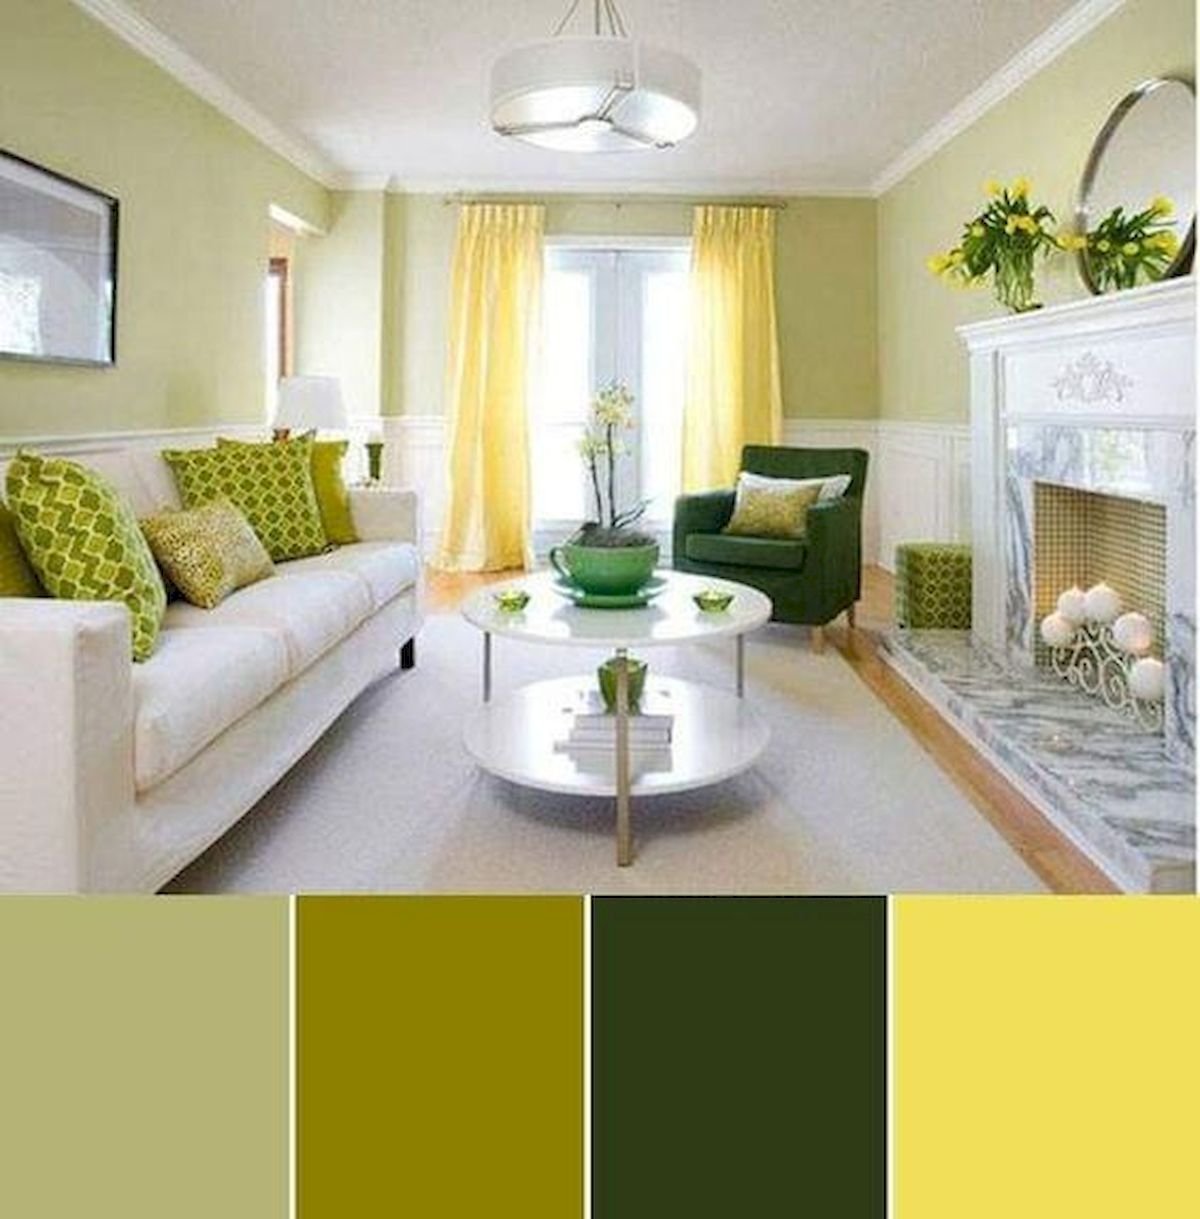 Сочетание цветов в интерьере по таблице: пол, потолок, стены, мебель, как подобрать цвет пола